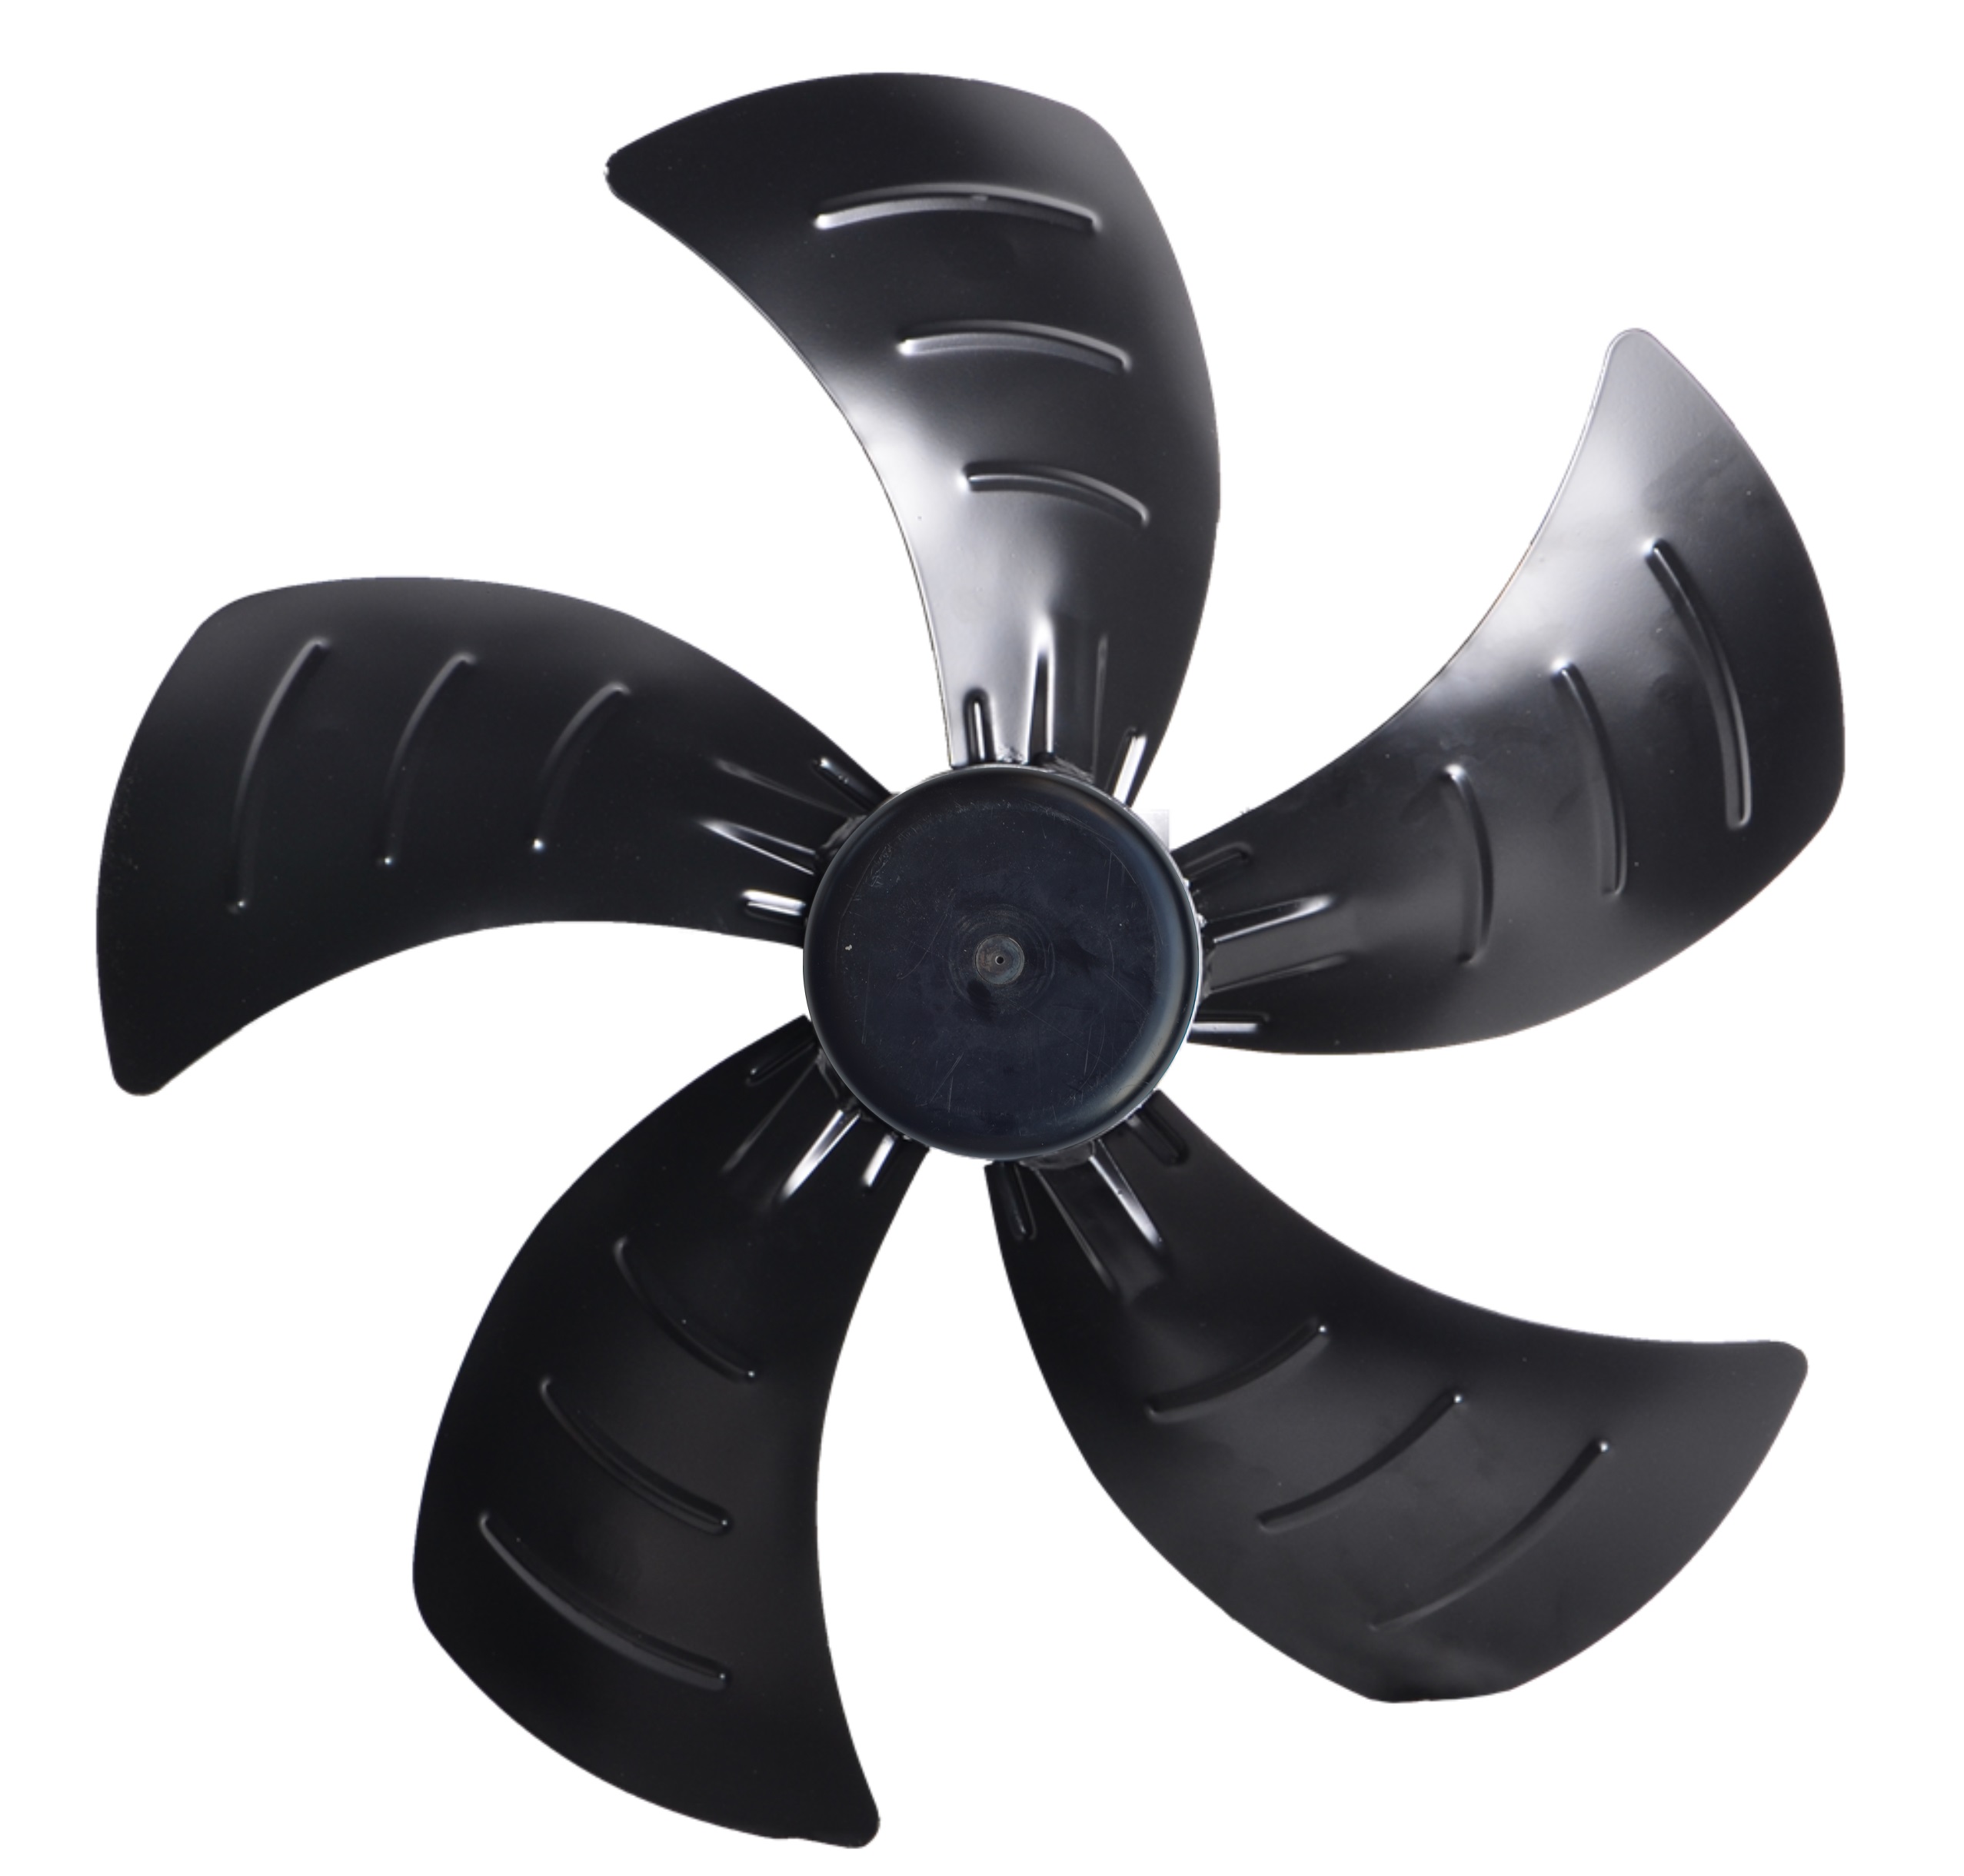 centrifugal fan vs axial fan